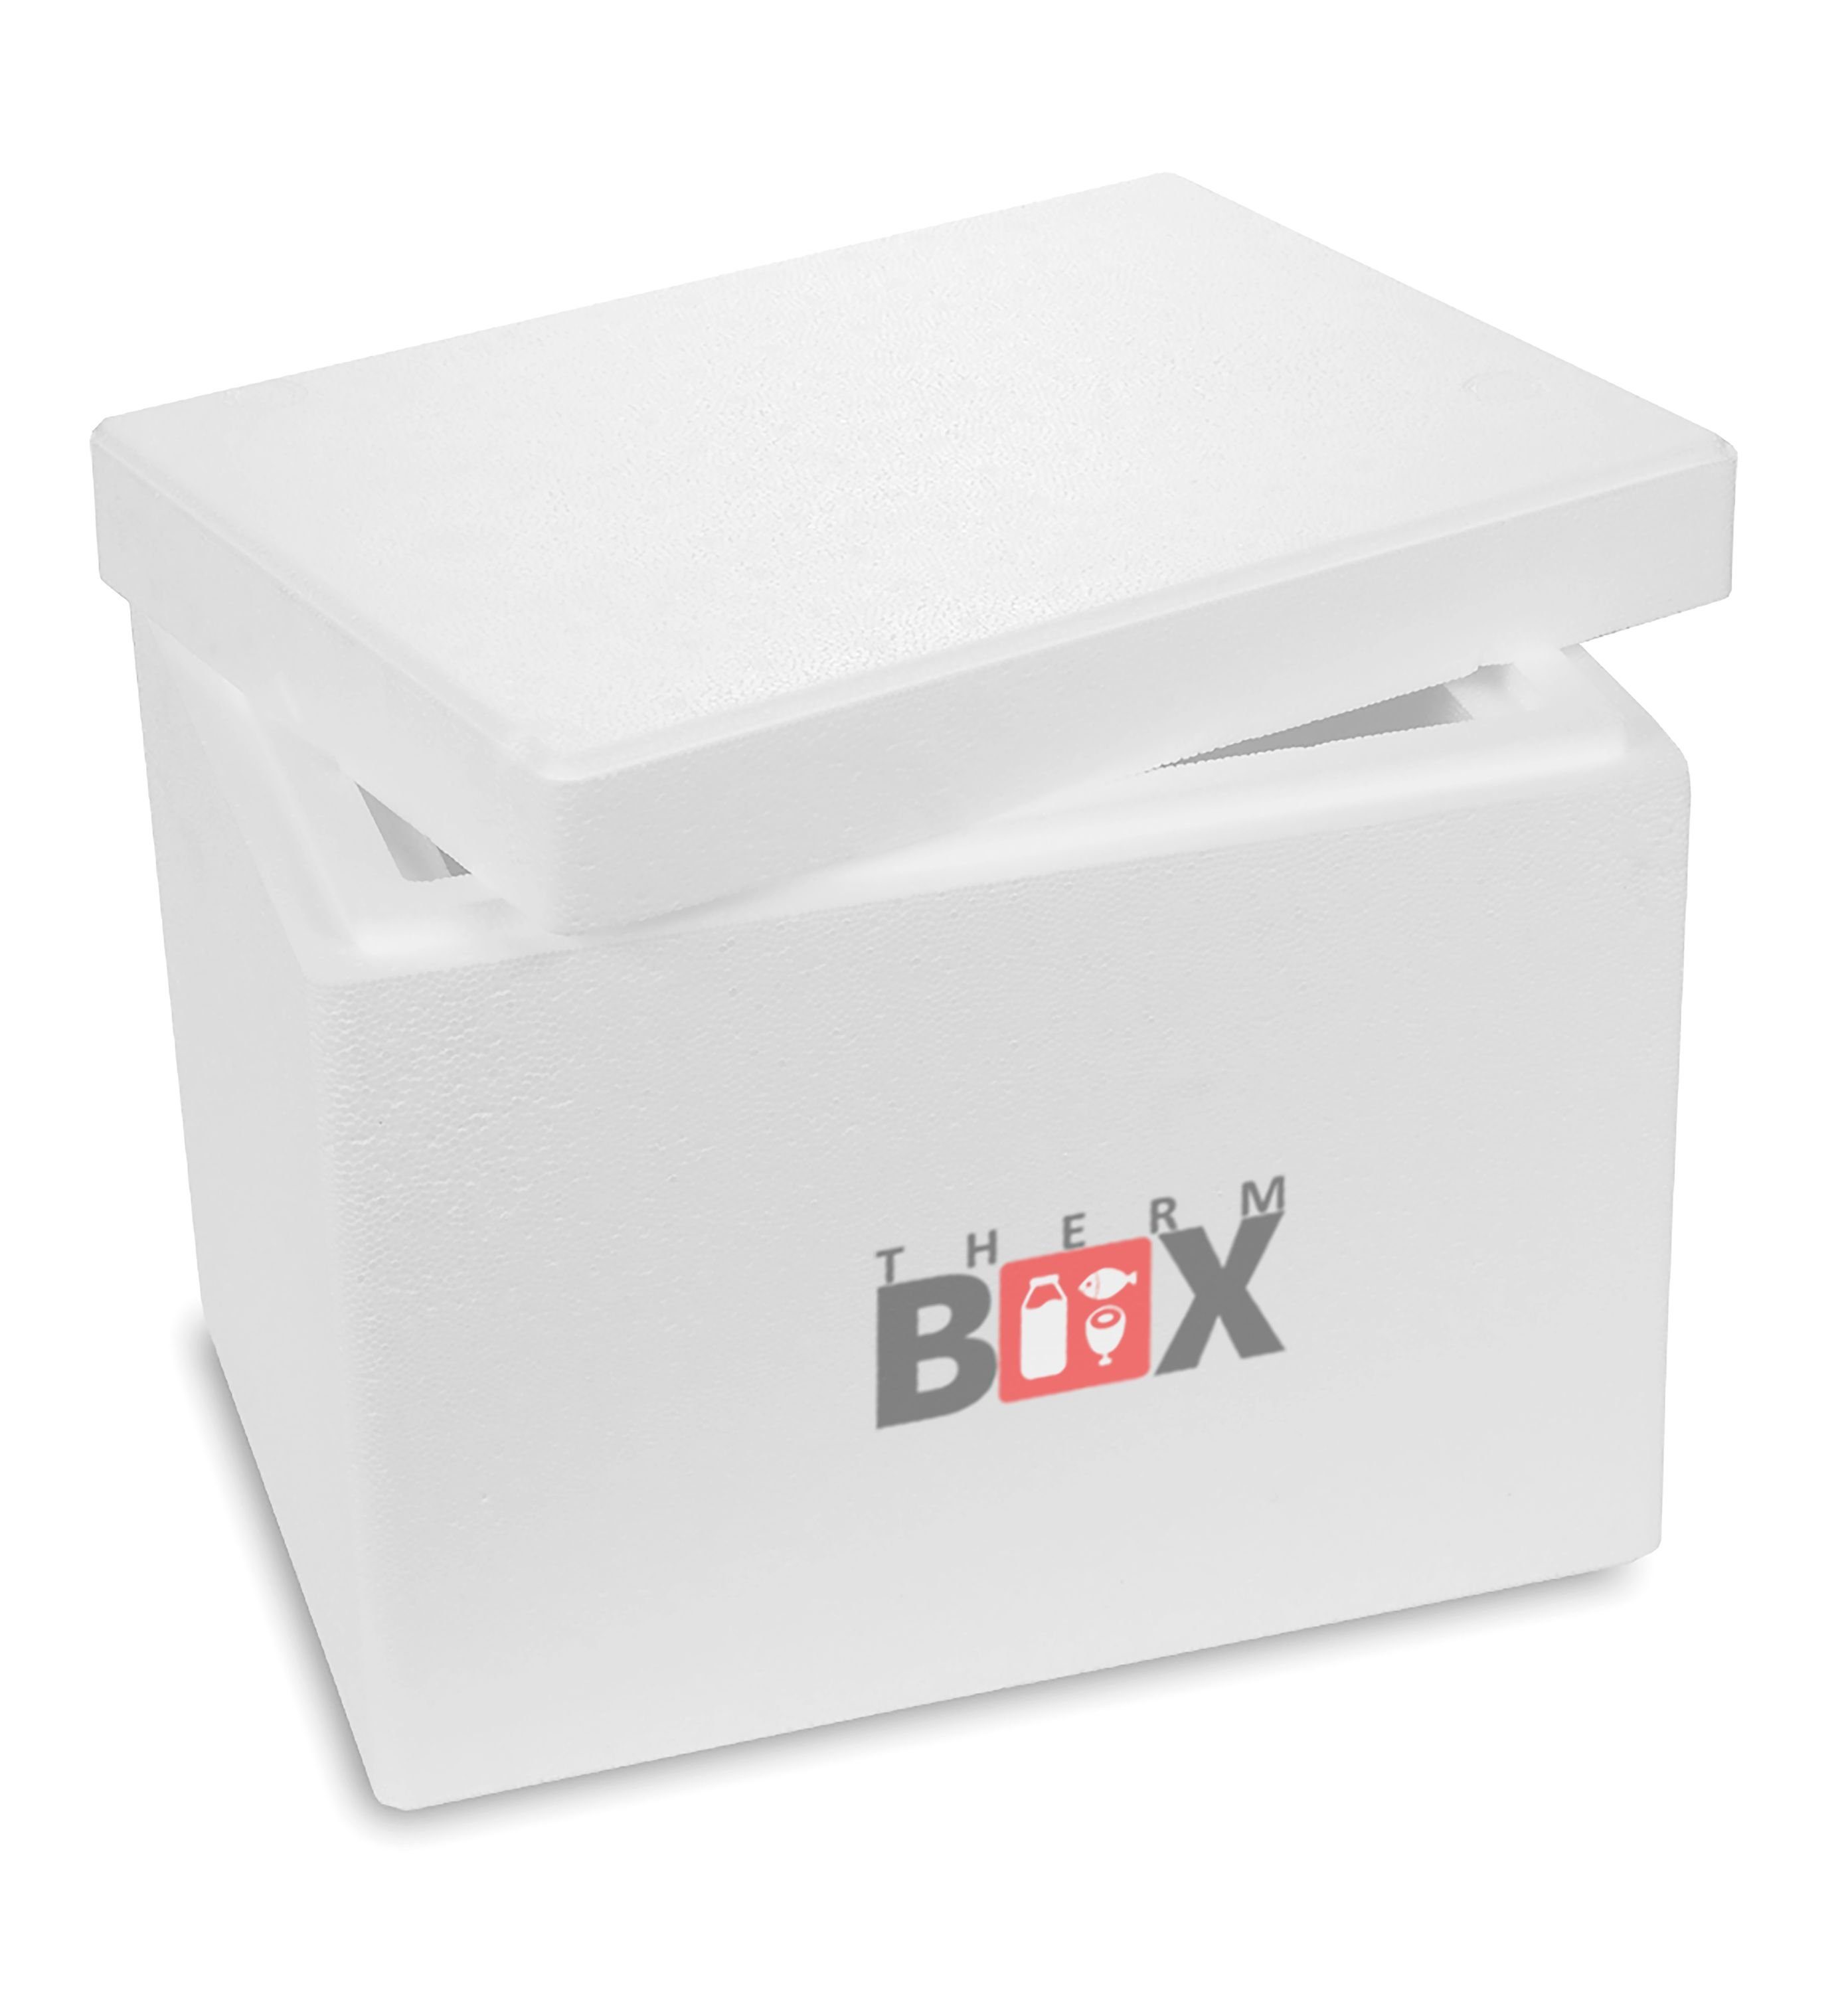 THERM-BOX Thermobehälter Styroporbox 13W Innen: 30x20x22cm Wand: 5cm 13,2L, Styropor-Verdichtet, (1, 0-tlg., Box mit Deckel im Karton), Isolierbox Thermobox Kühlbox Warmhaltebox Wiederverwendbar